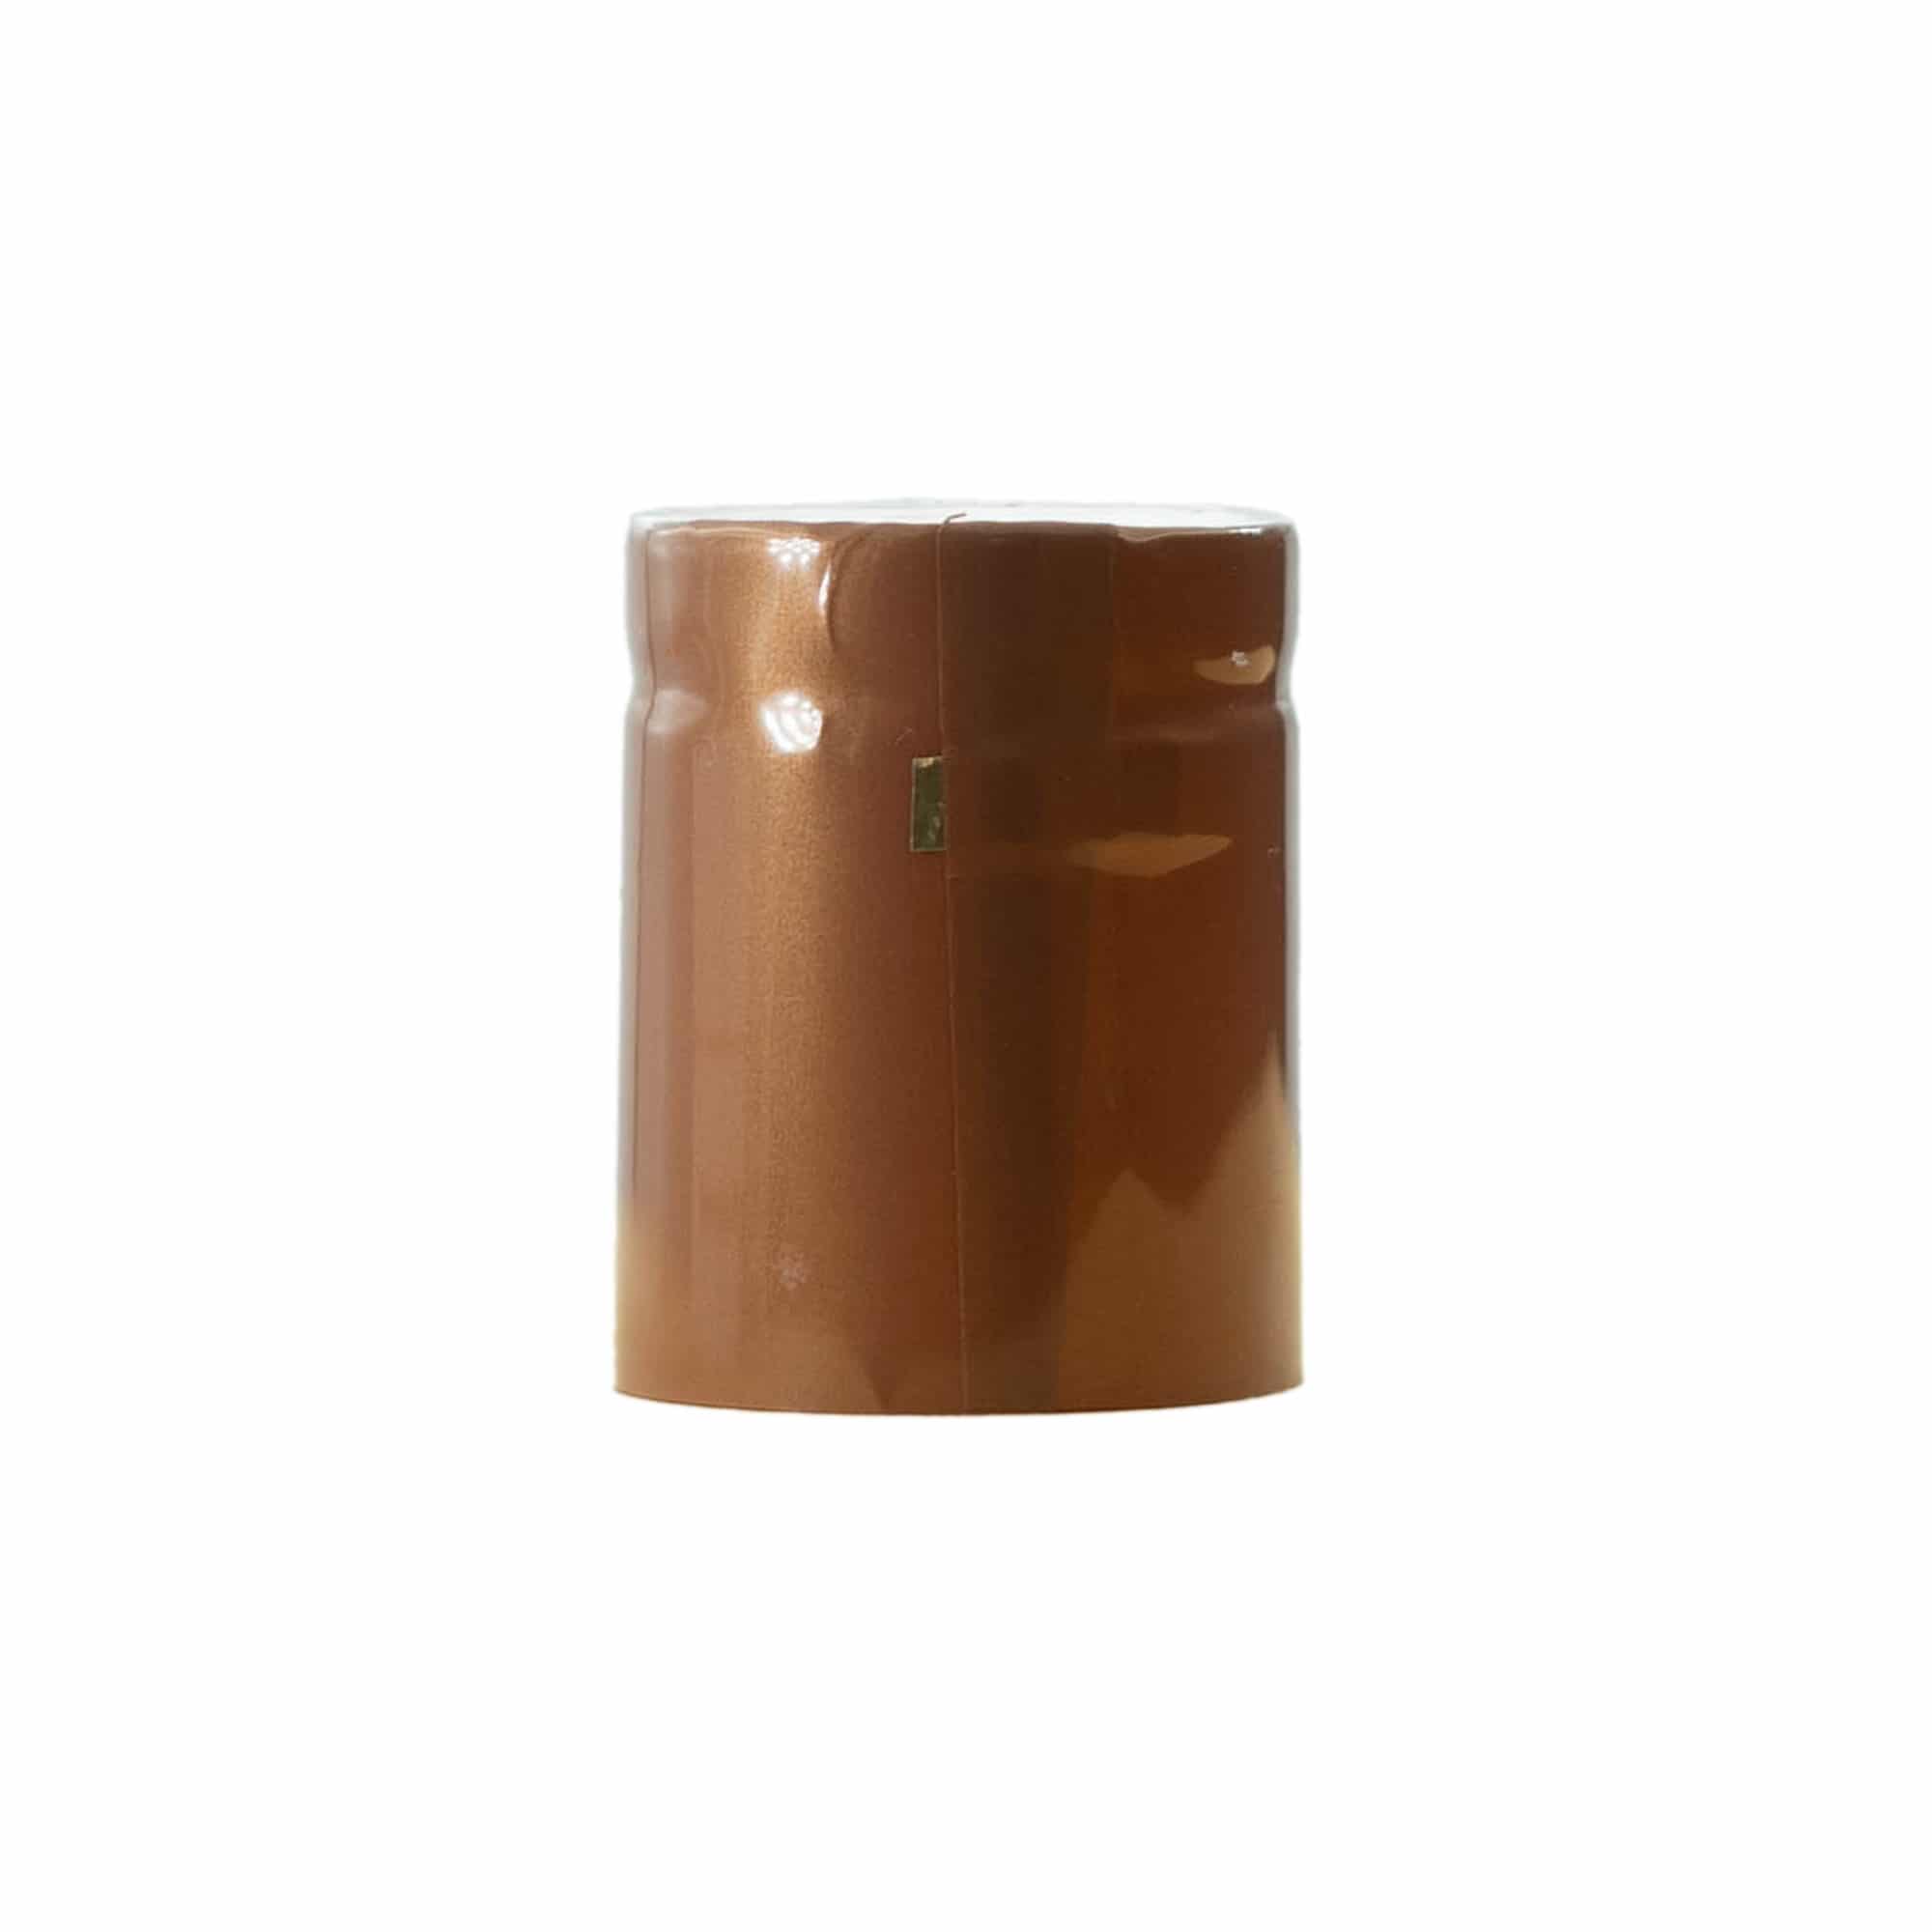 Krimpcapsule 32x41, pvc-kunststof, brons